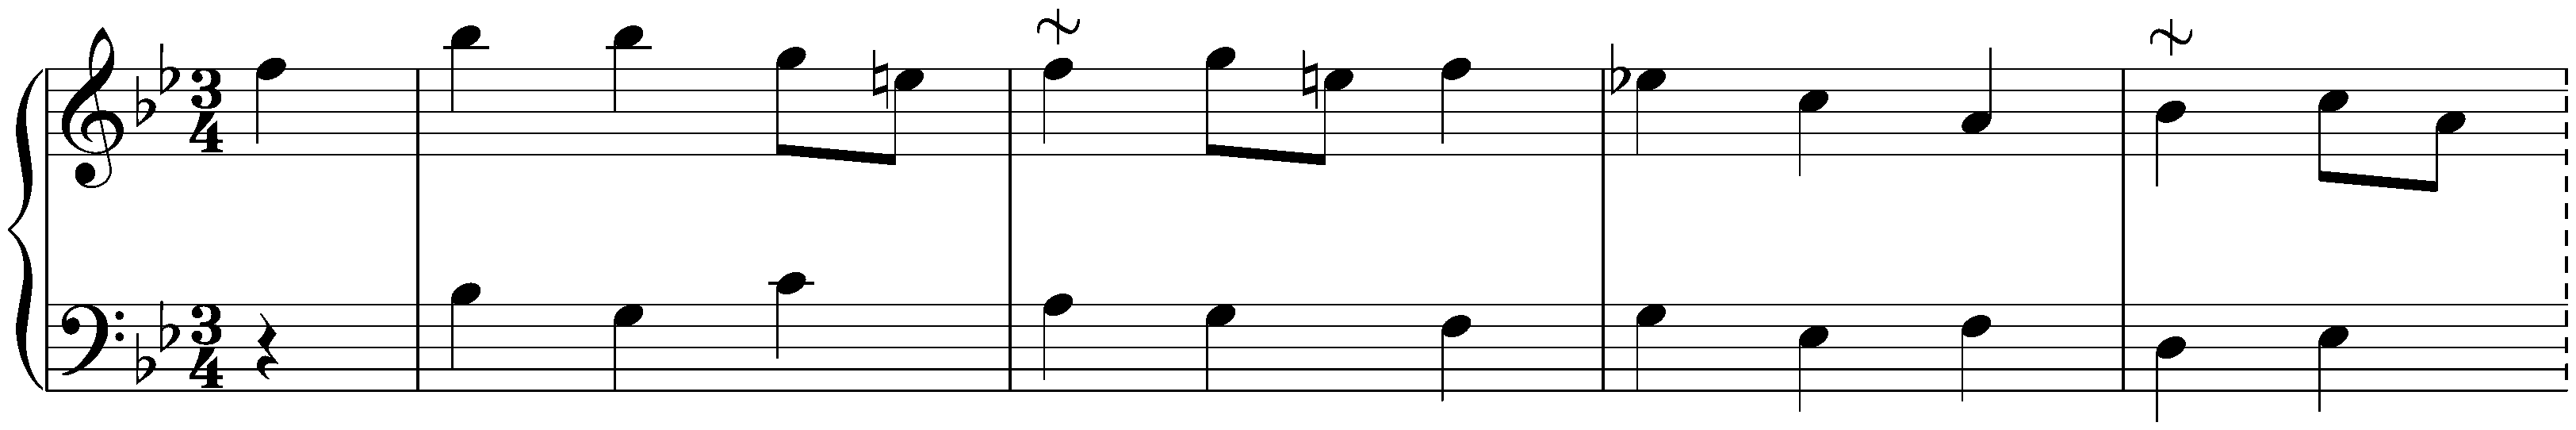 Twelve Menuets, Hob. IX:3; 6. B-flat major